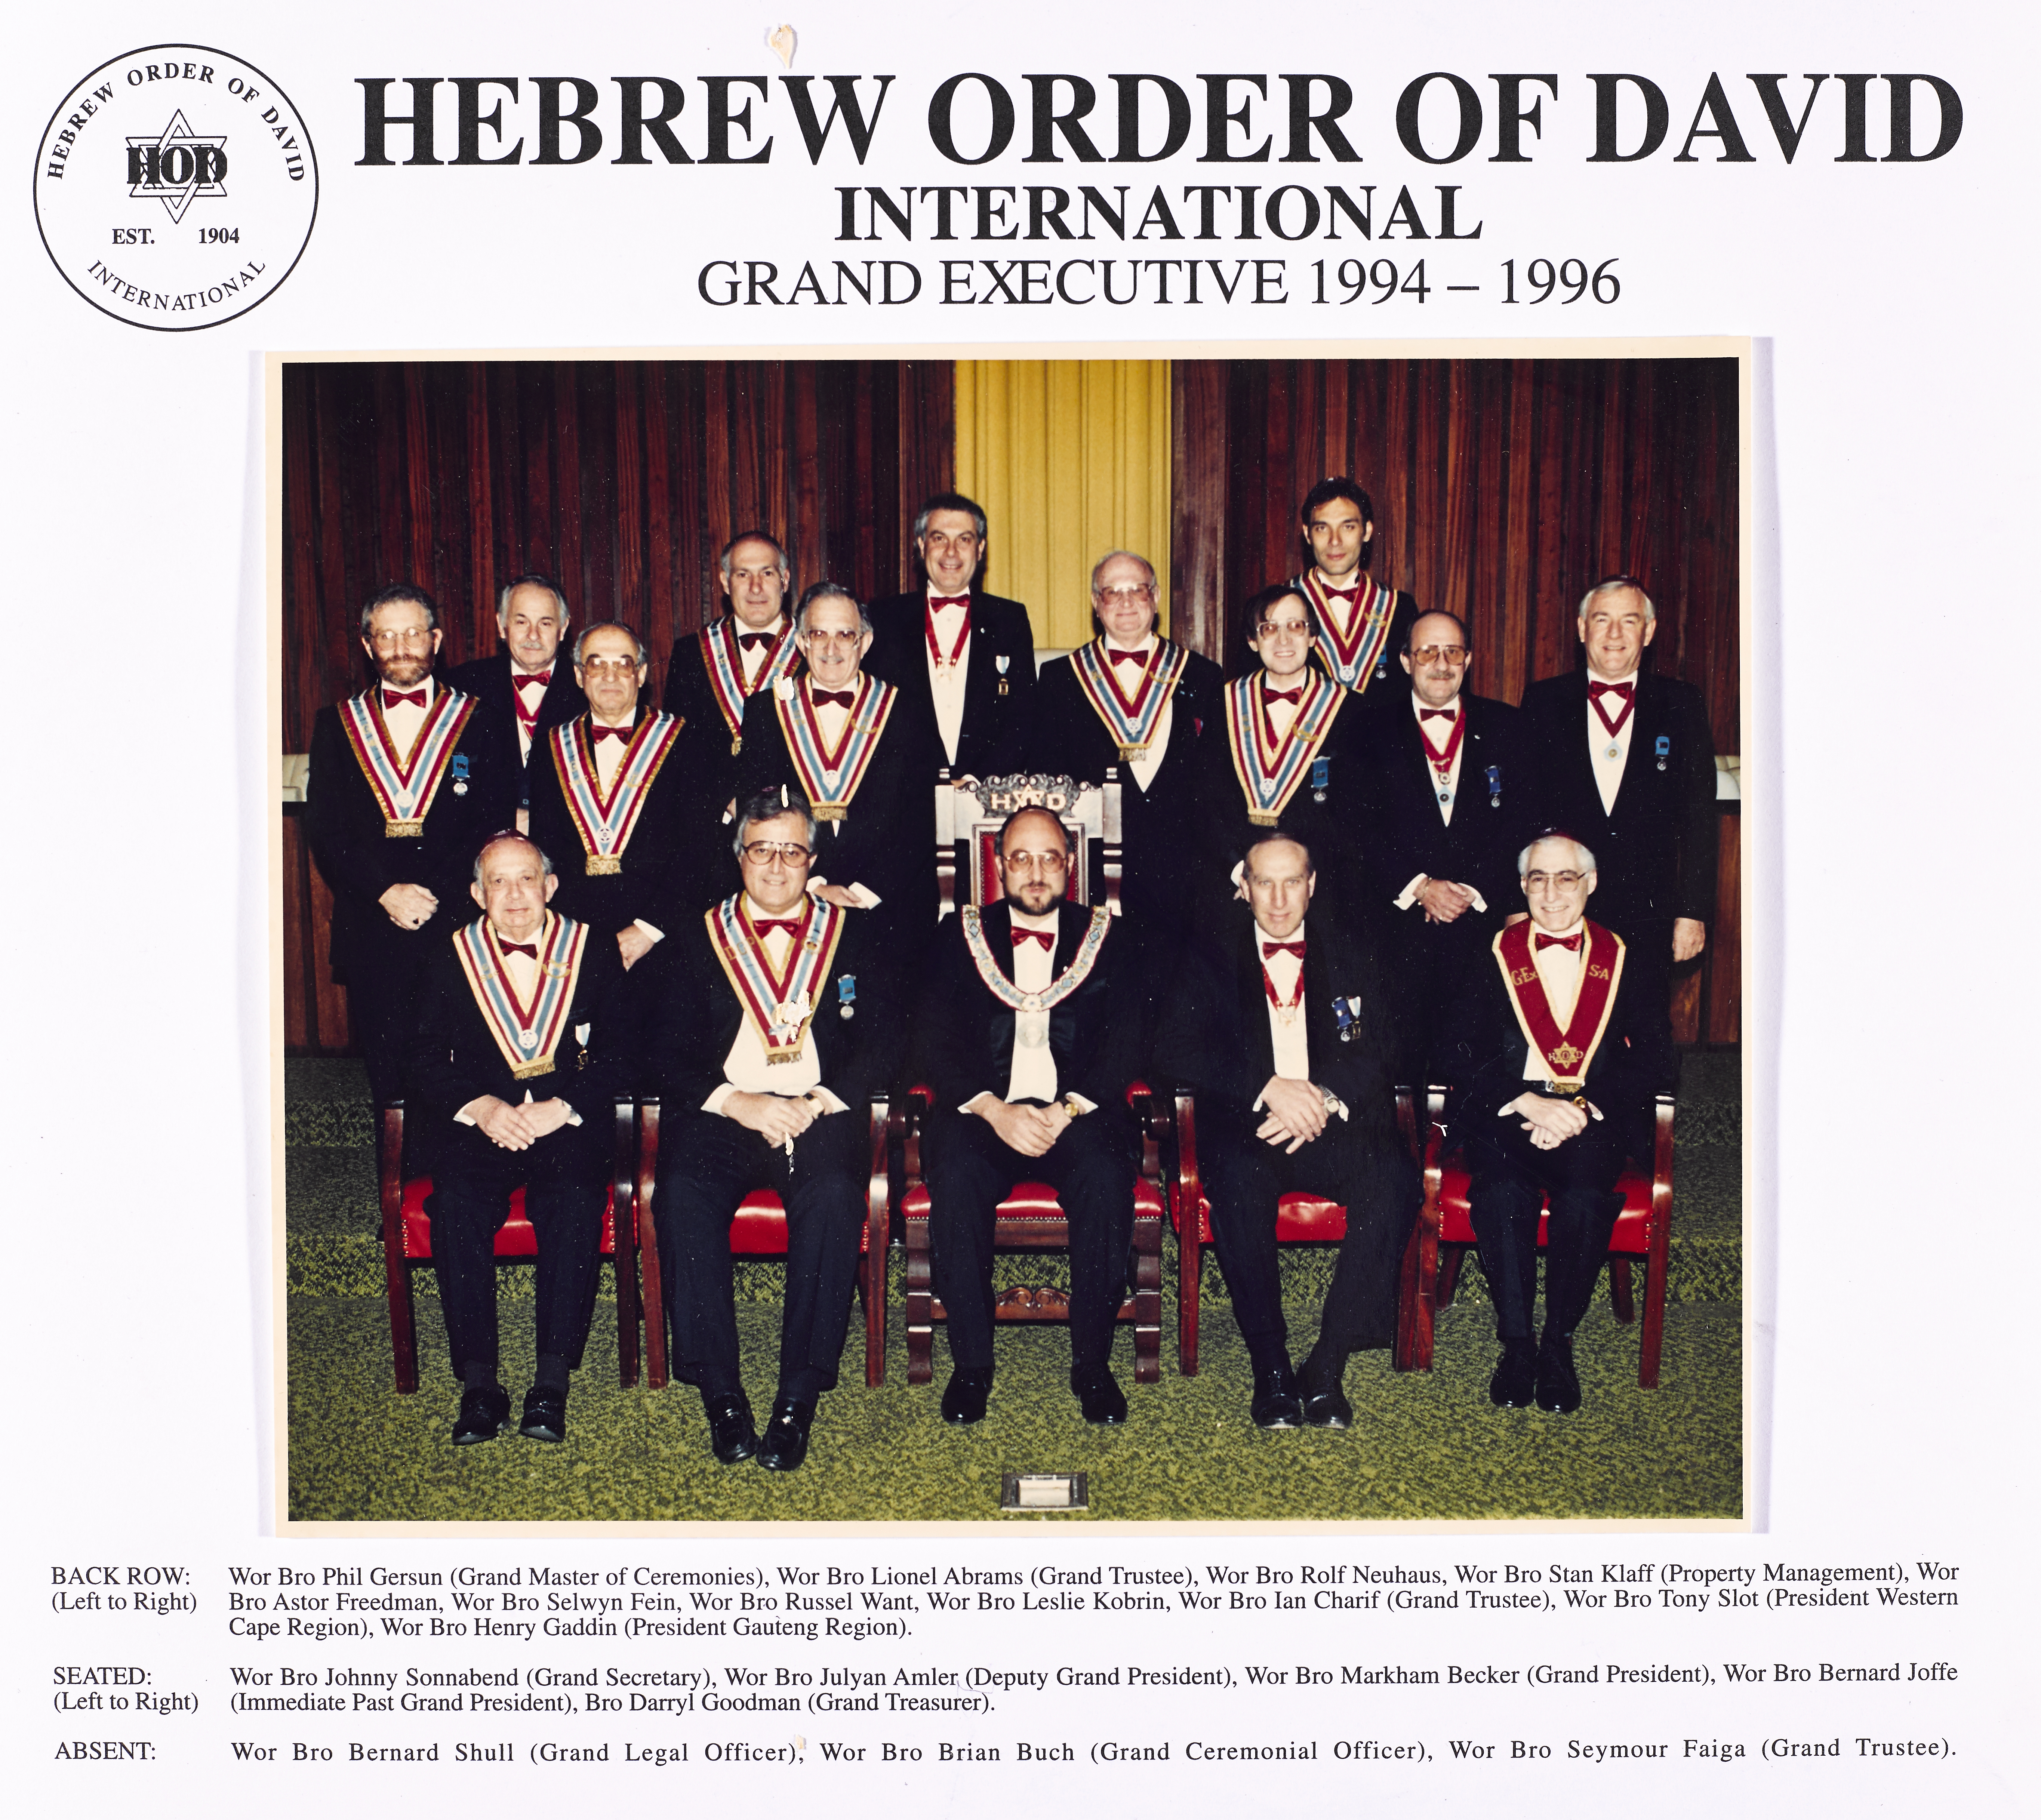 Grand Executive 1994 to 1996